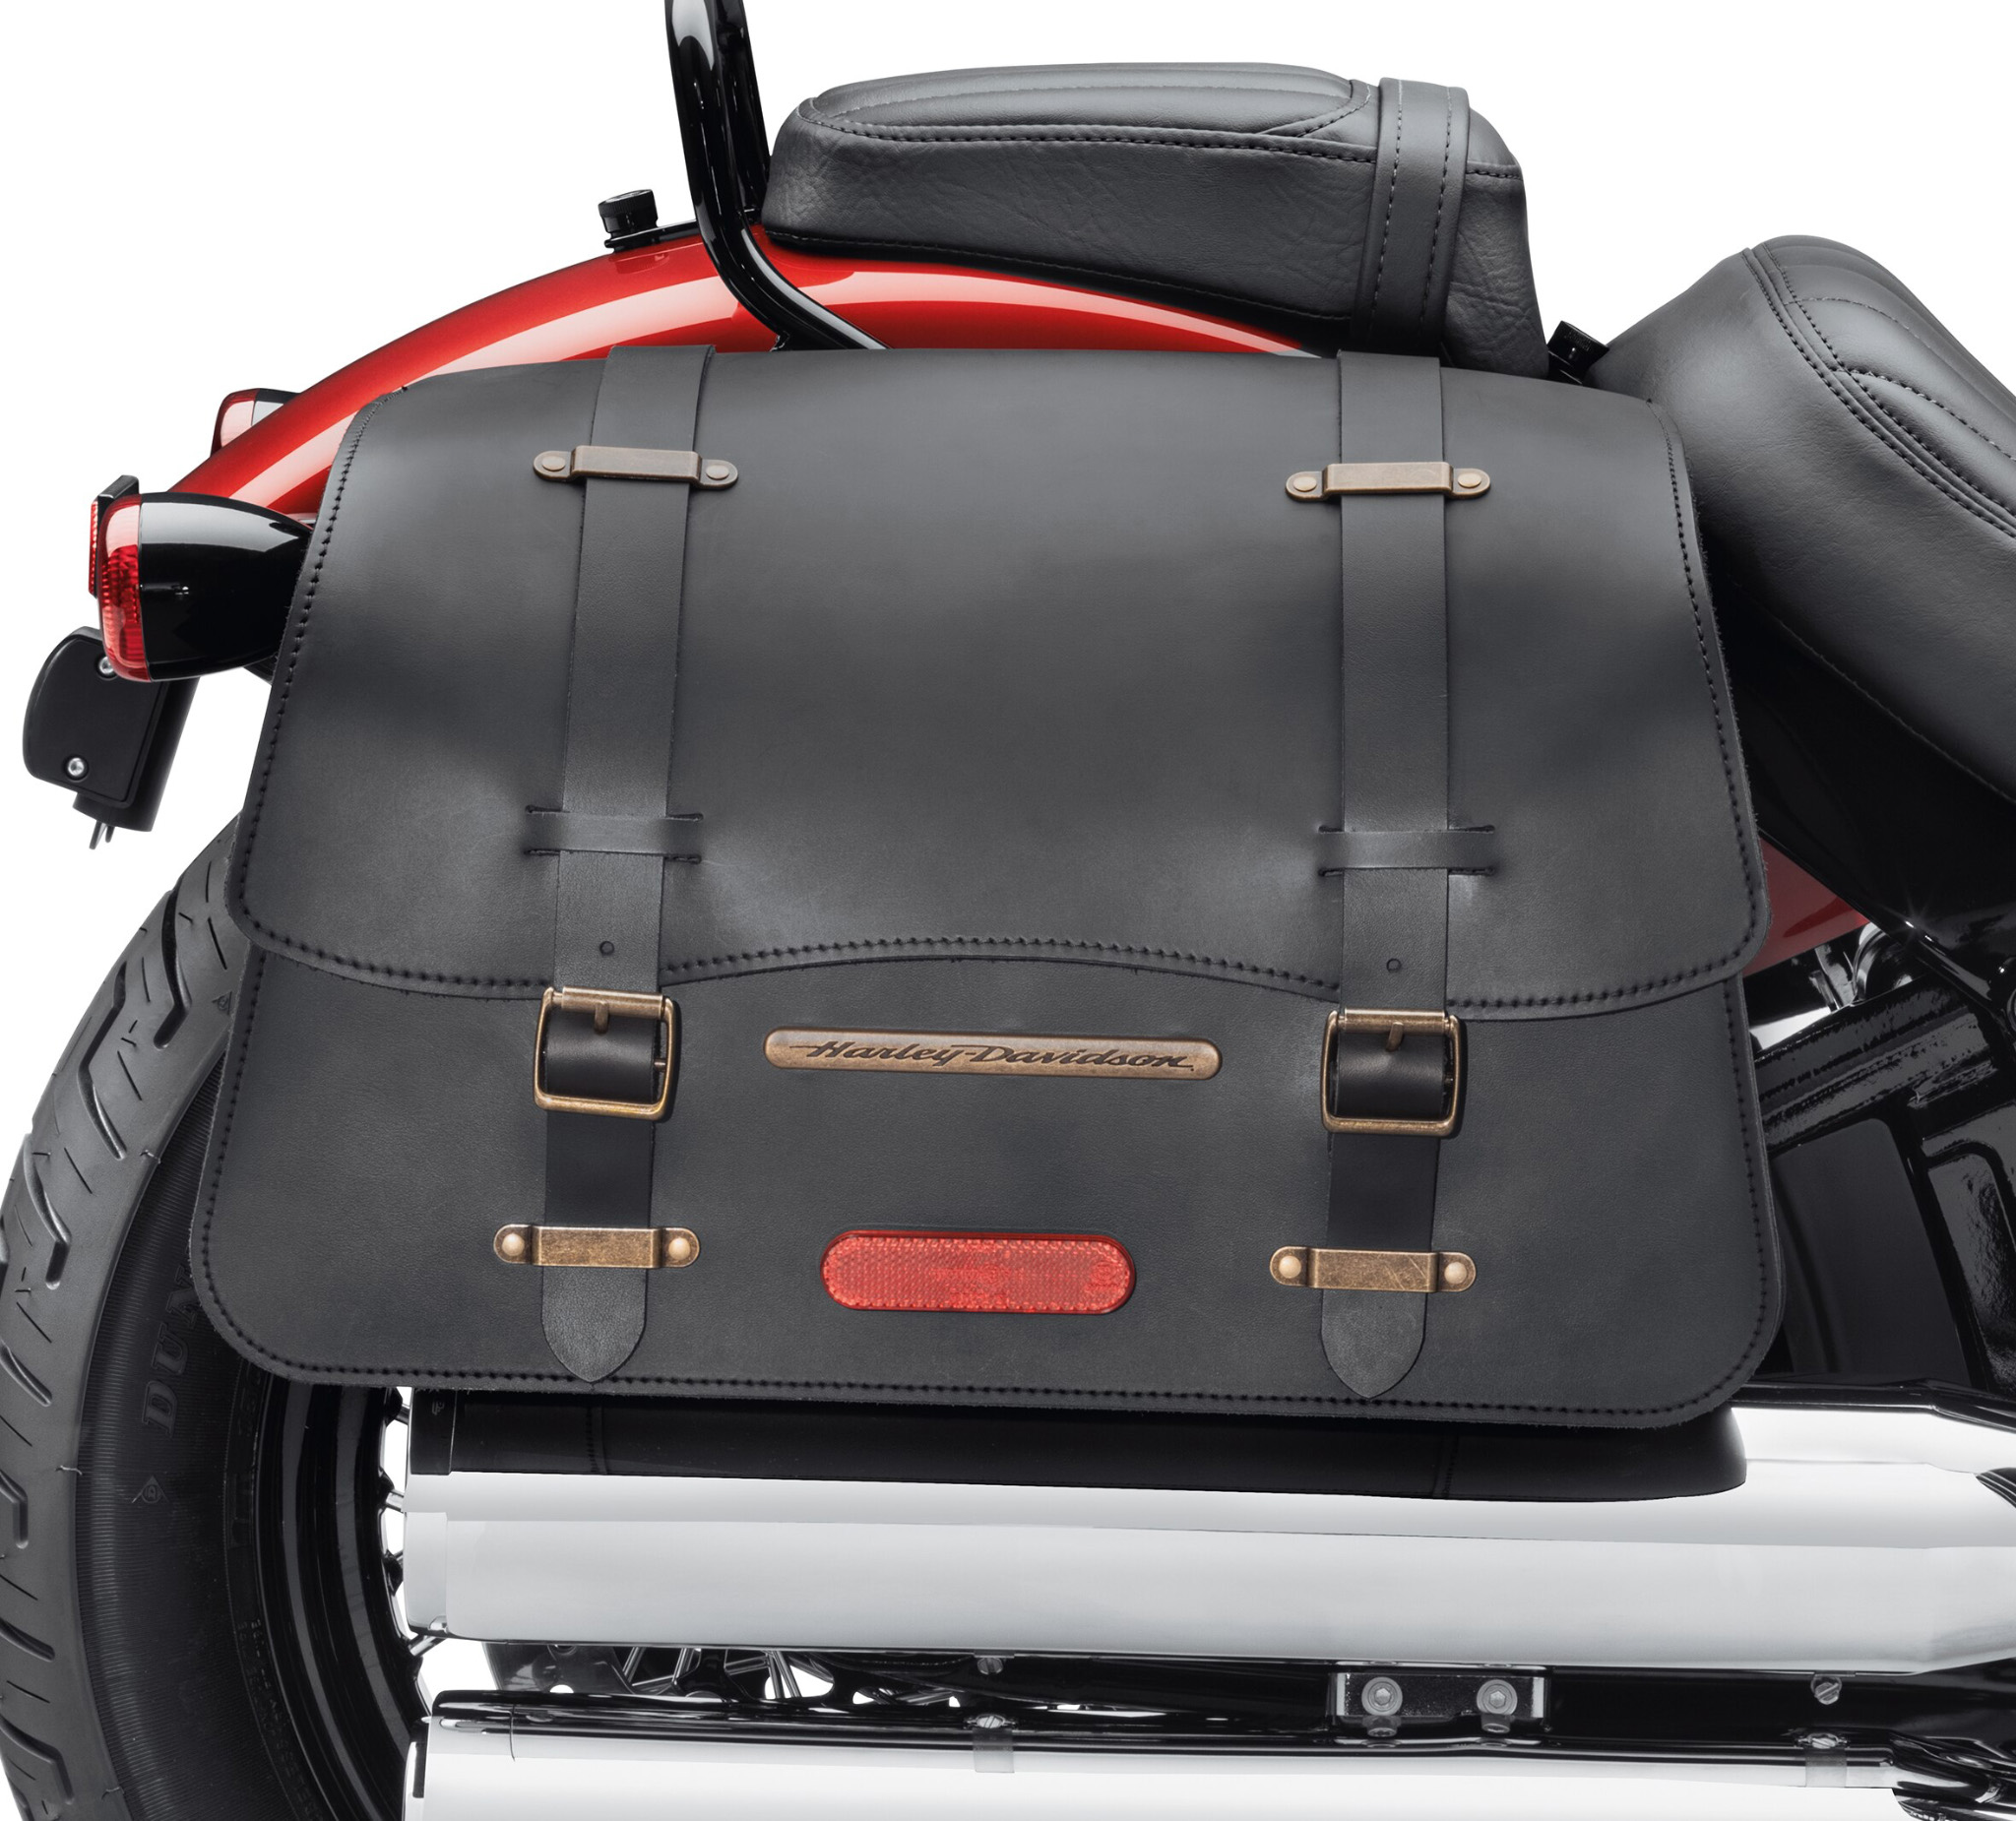 Buy motorcycle saddlebags online in india | motorcycle bags - A H Helmets